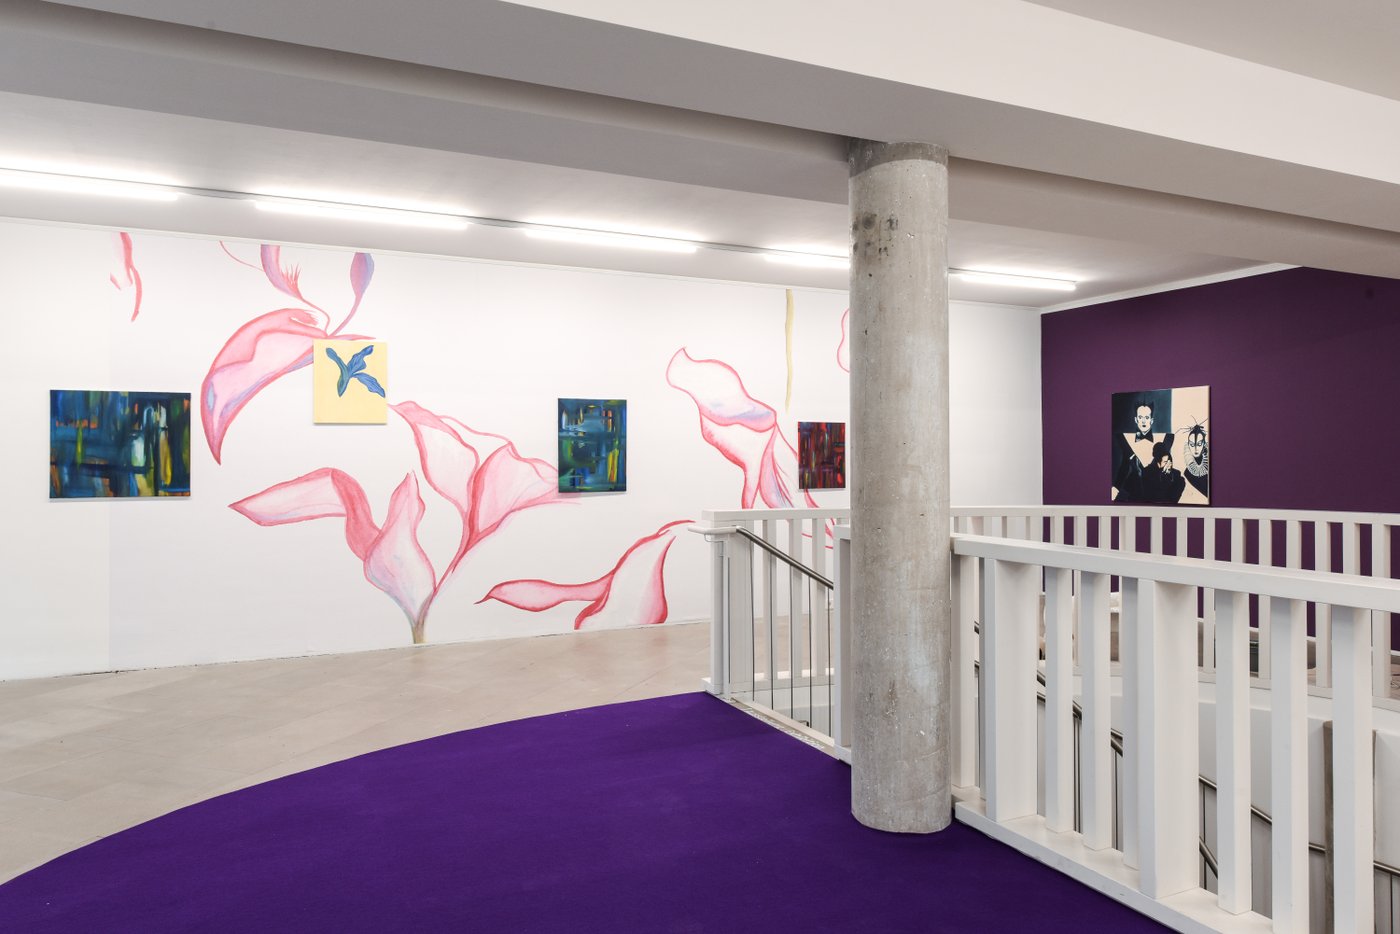 Raum mit Lila Boden und Lila wand rechts, ein Treppenabgang und eine Säule auf der rechten Bildhälfte, im Hintergrund an der Wand sind große rosa Blumen gemalt, dazwischen Gemälde in bunten Farben an der Wand